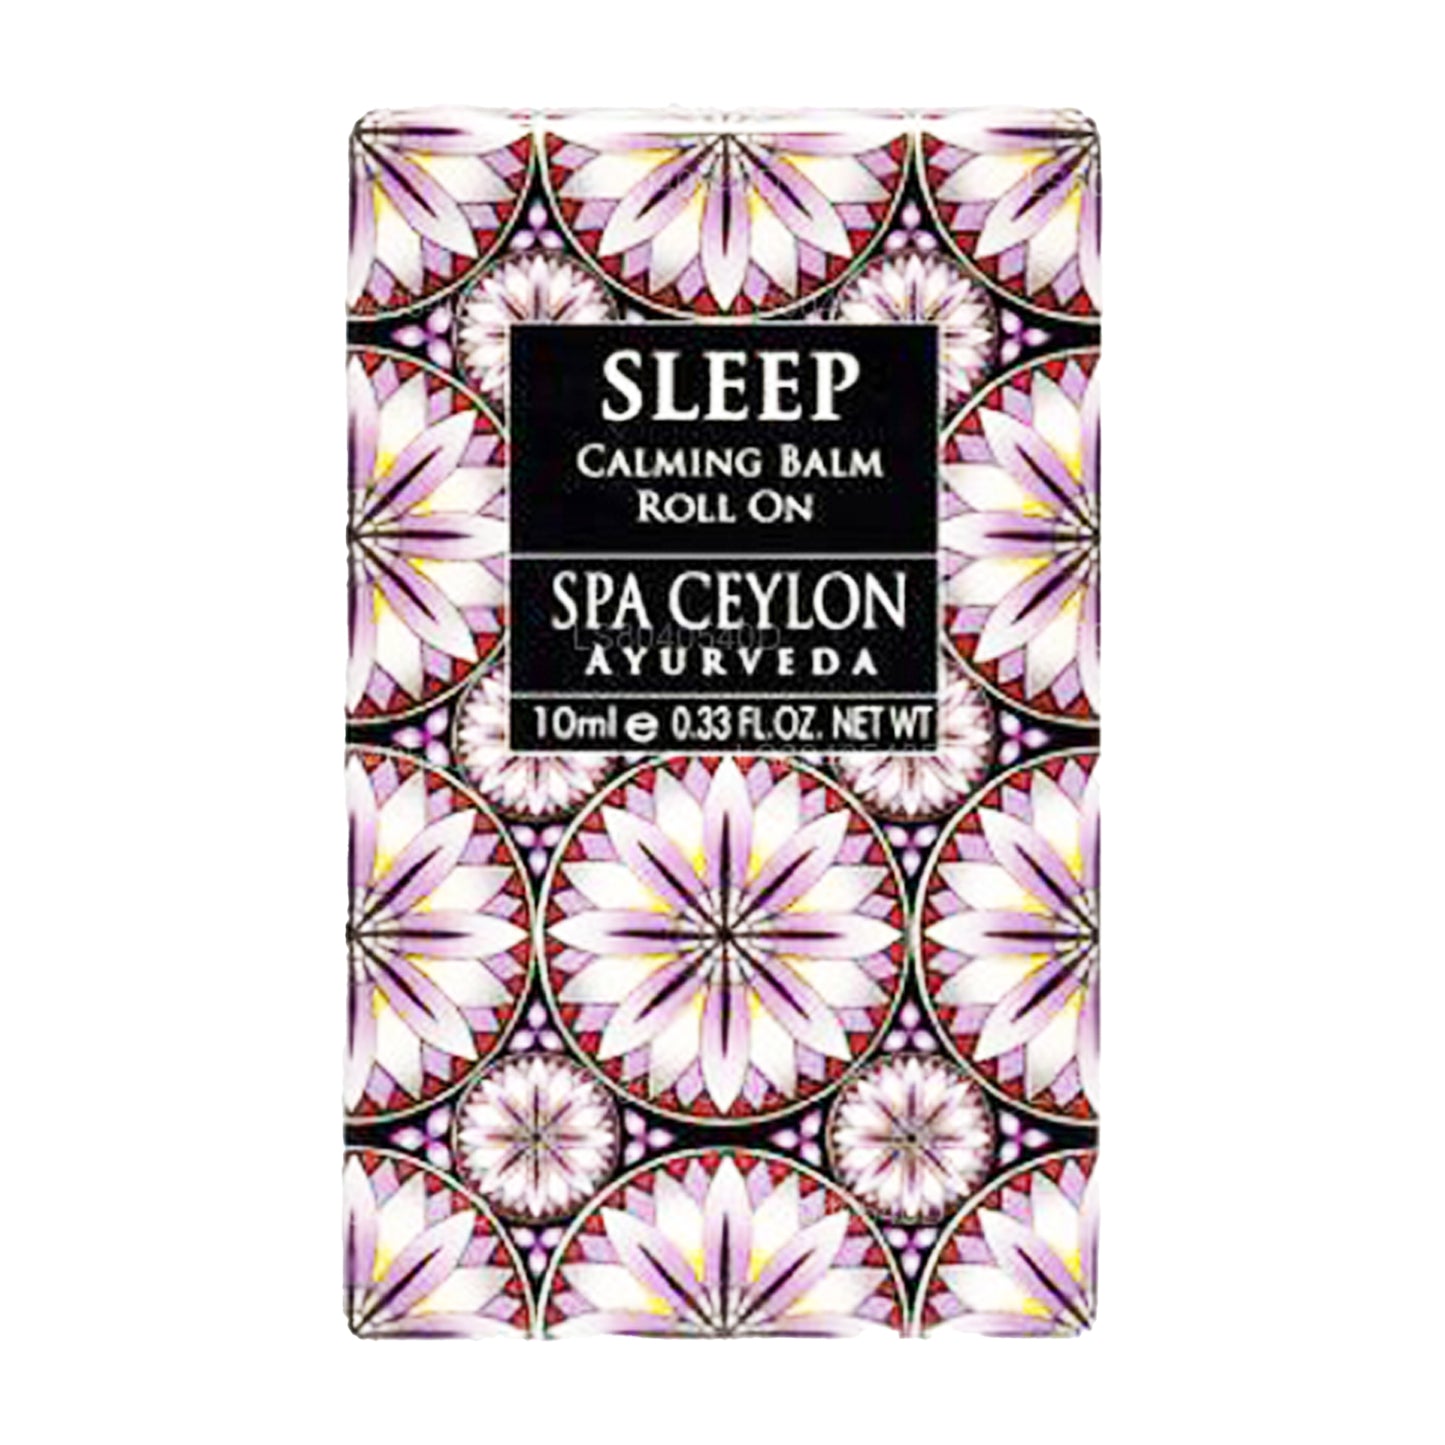 Spa CeylonÂ Sleep Calming Balm Roll On (10ml)